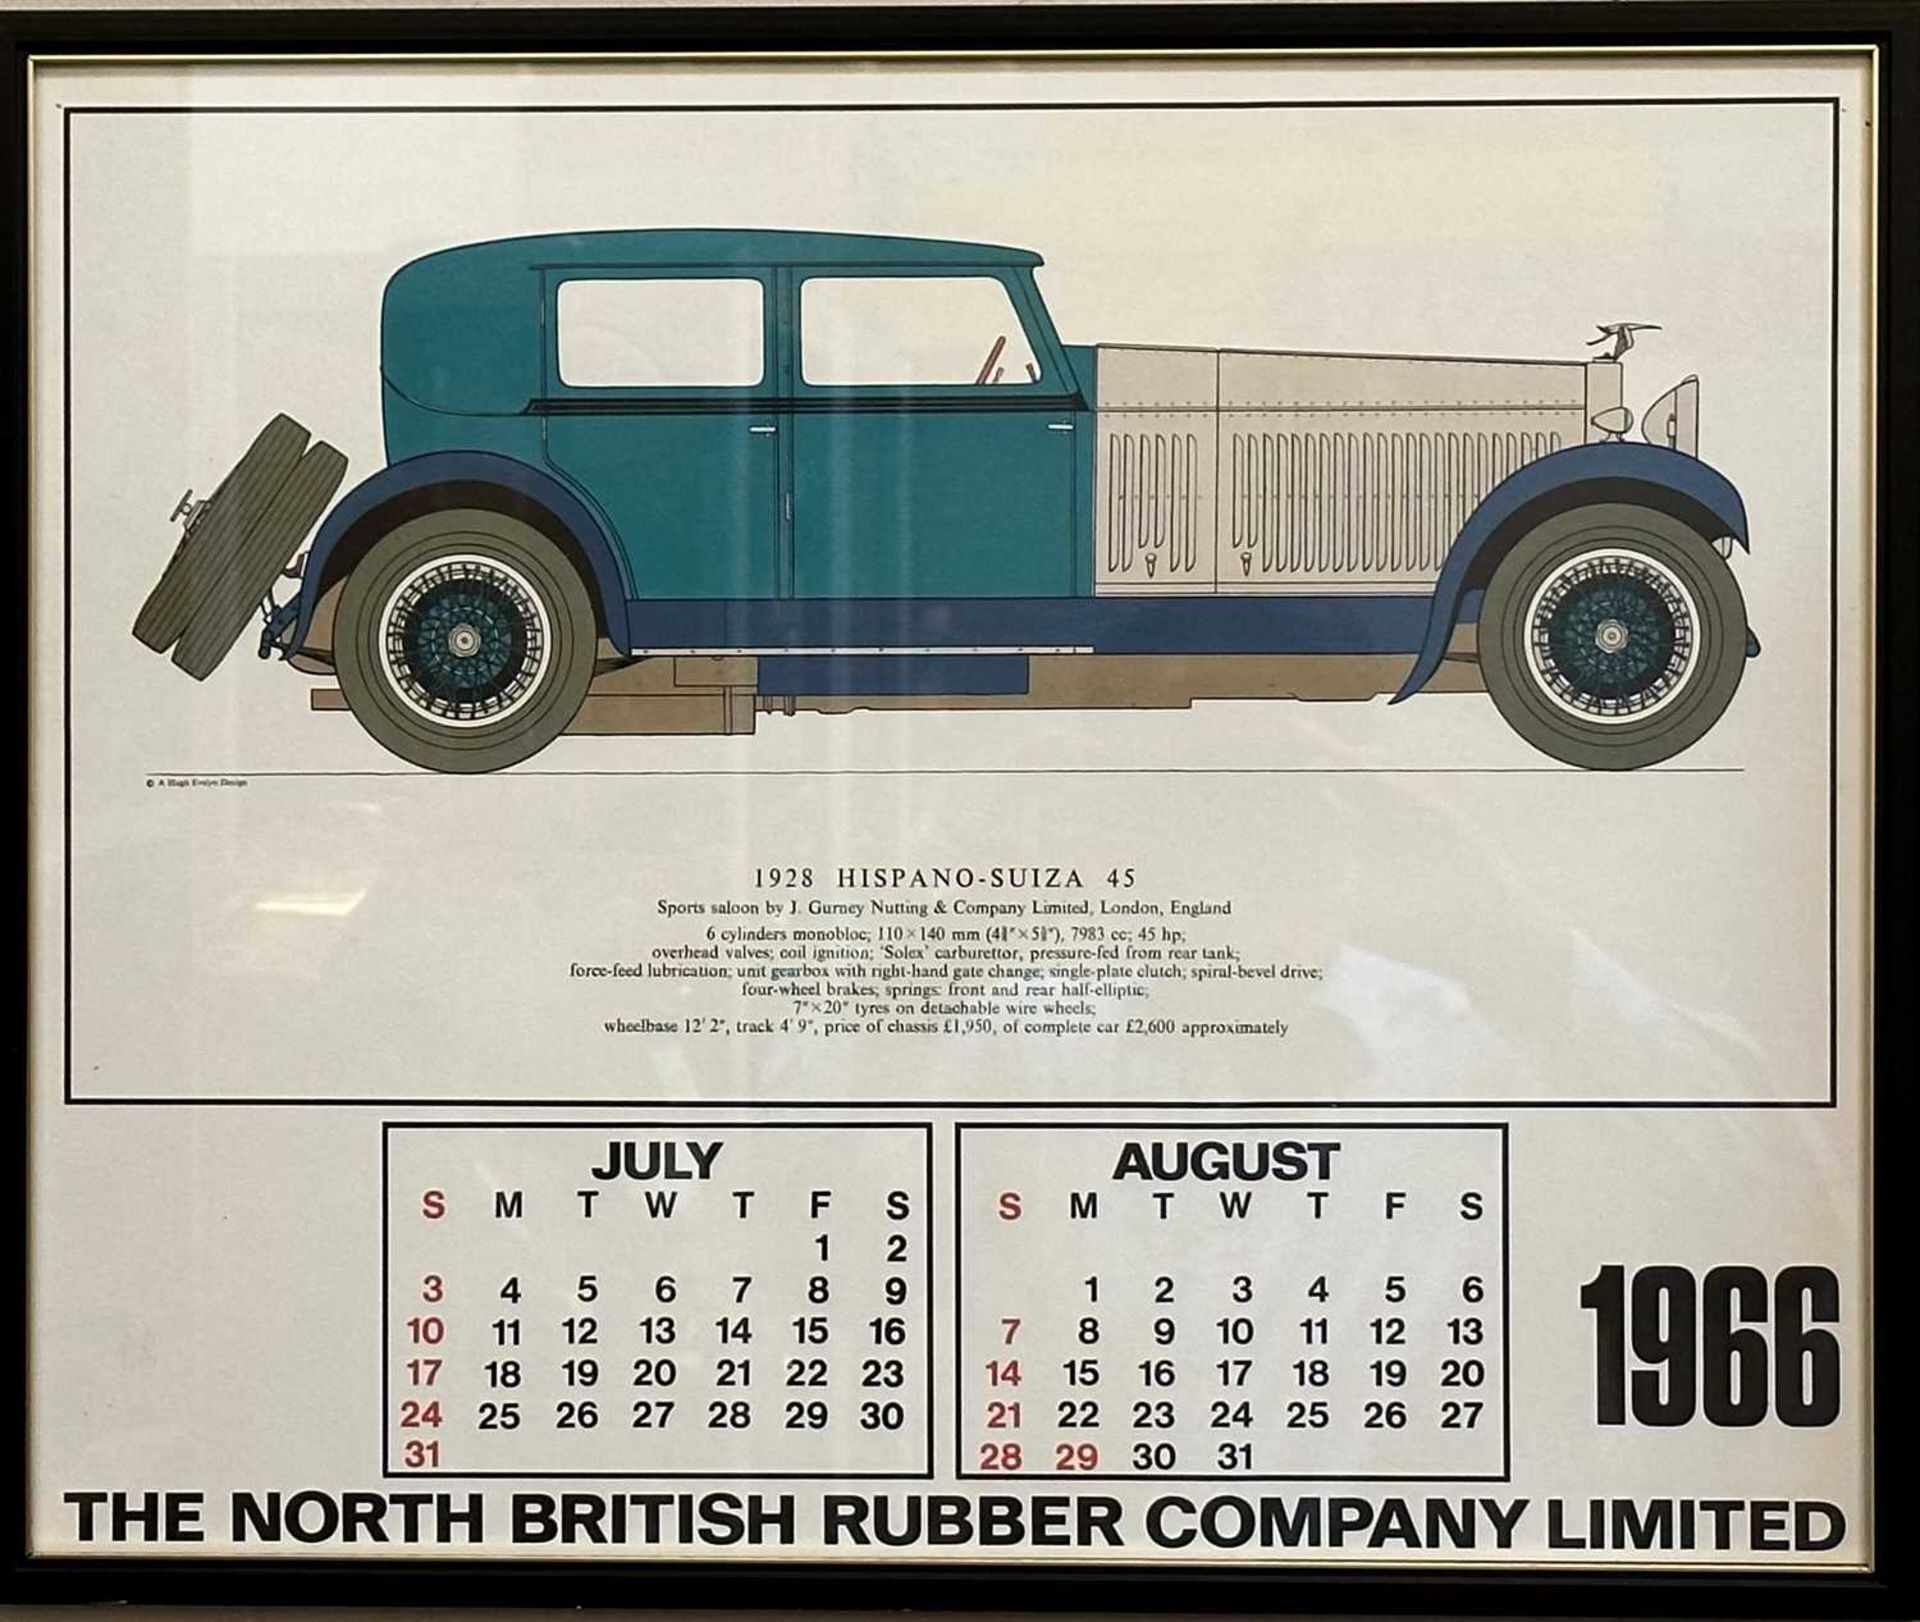 A set of 1966 Classic Car Calendar plates, - Image 3 of 6